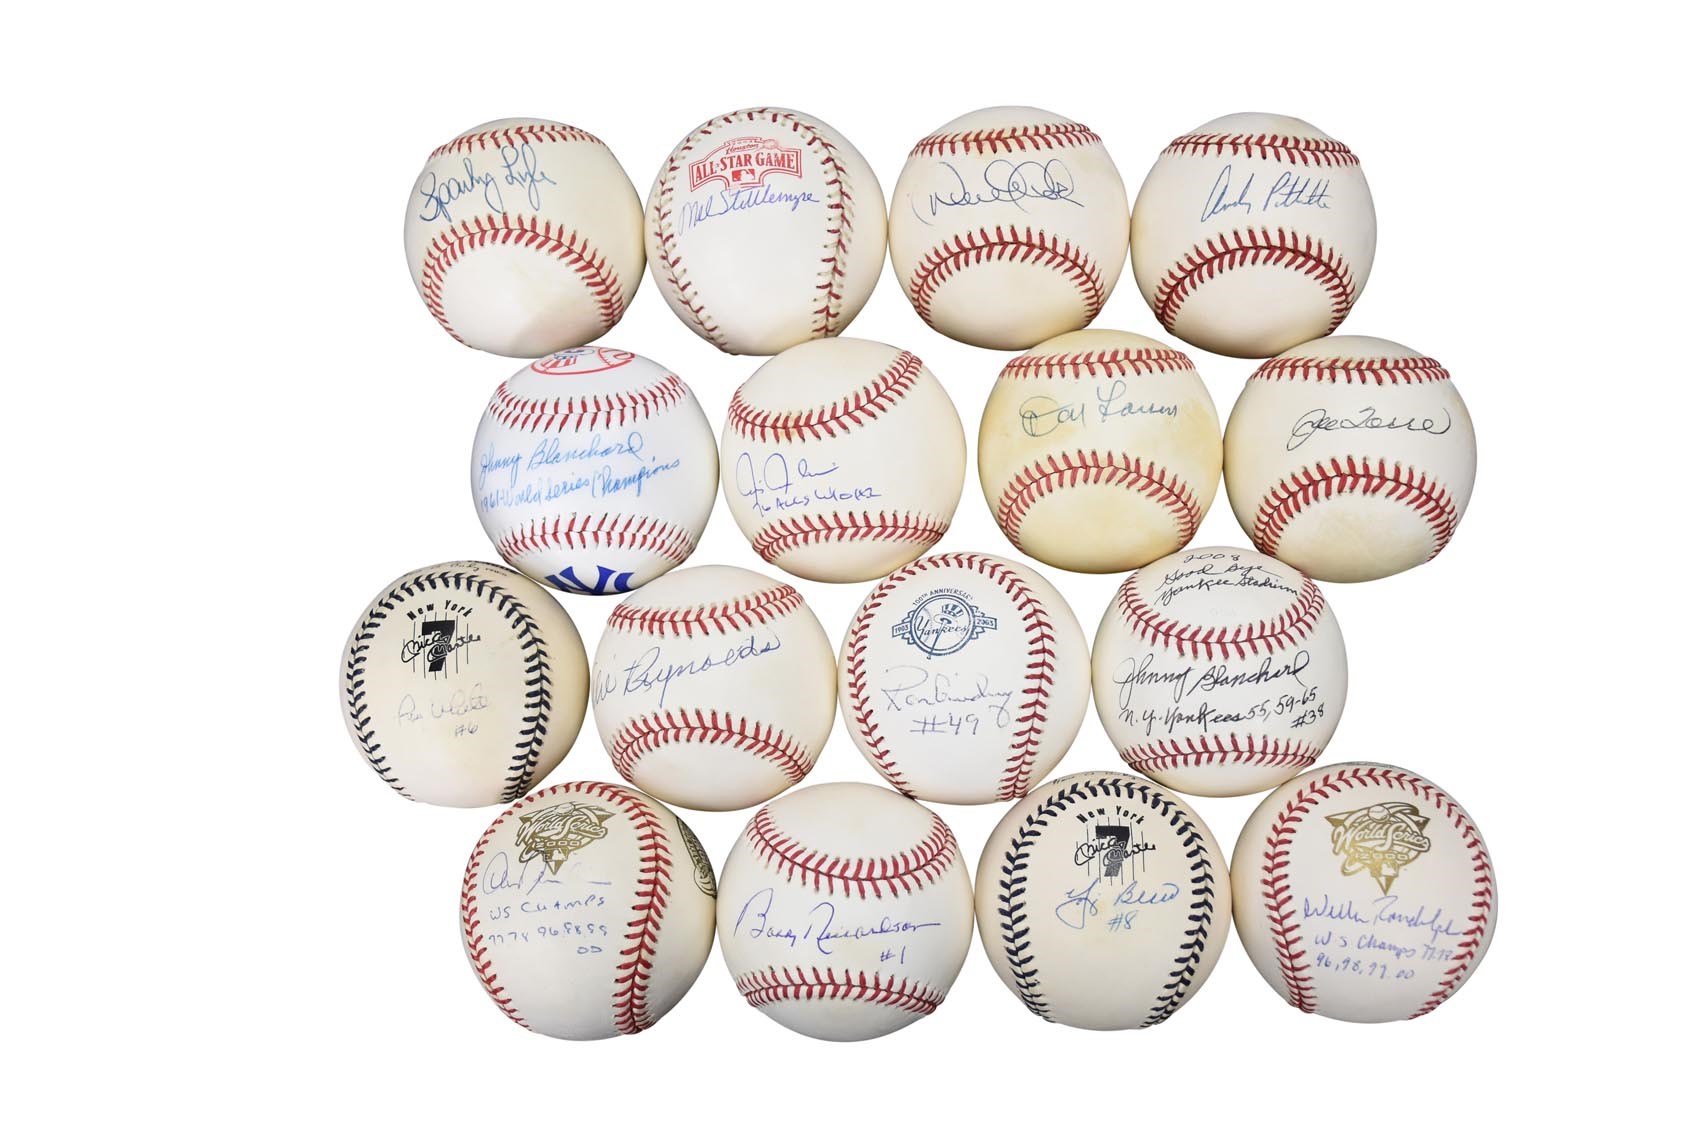 - Yankee Legends Signed Baseballs (16)